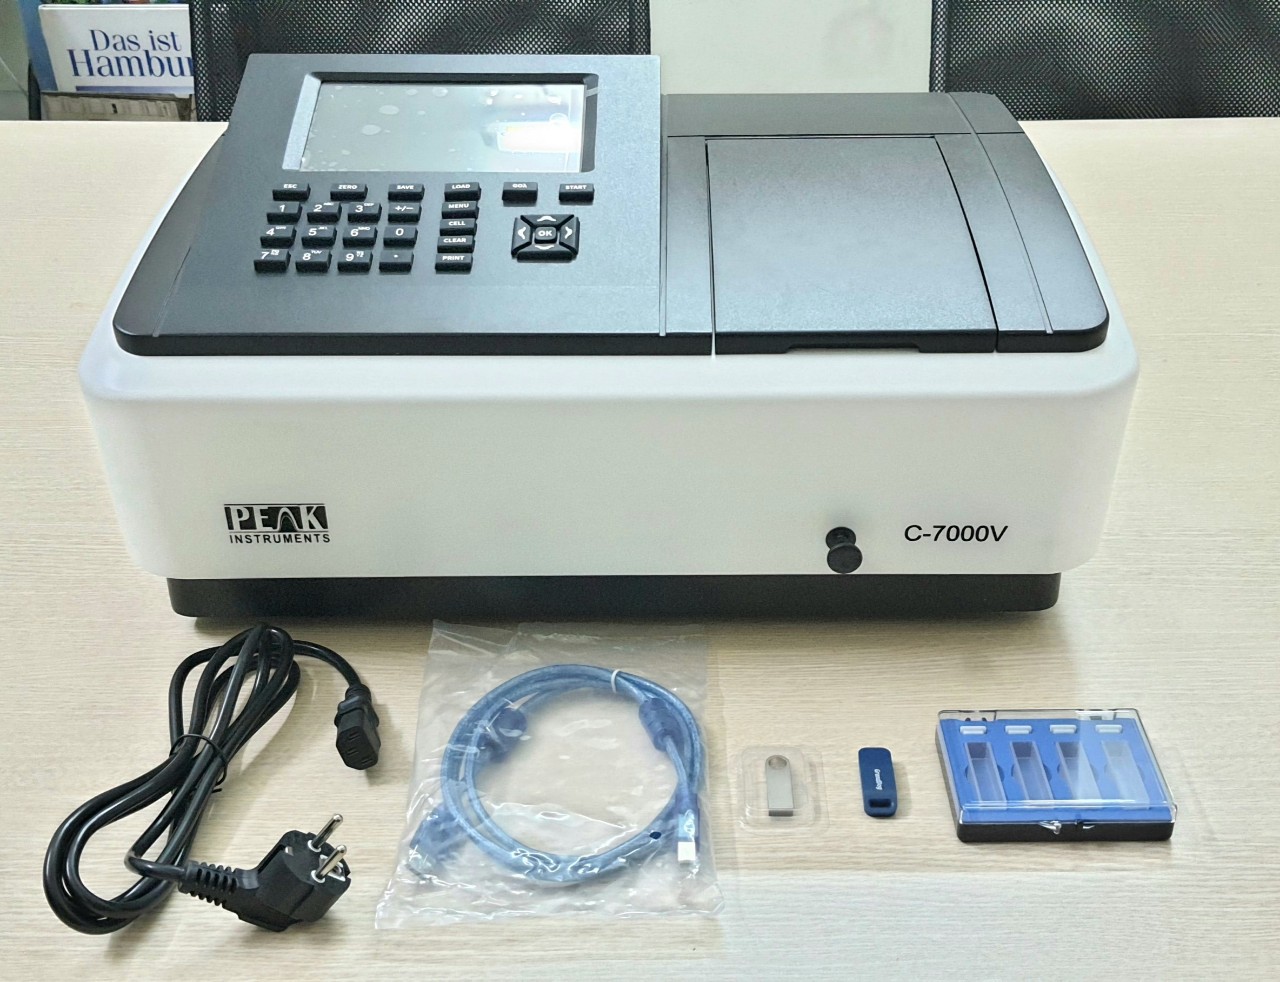 C-7000V, Thiết bị quang phổ 320 - 1100nm, 2nm, 1 chùm tia, hãng Peak Instruments, USA